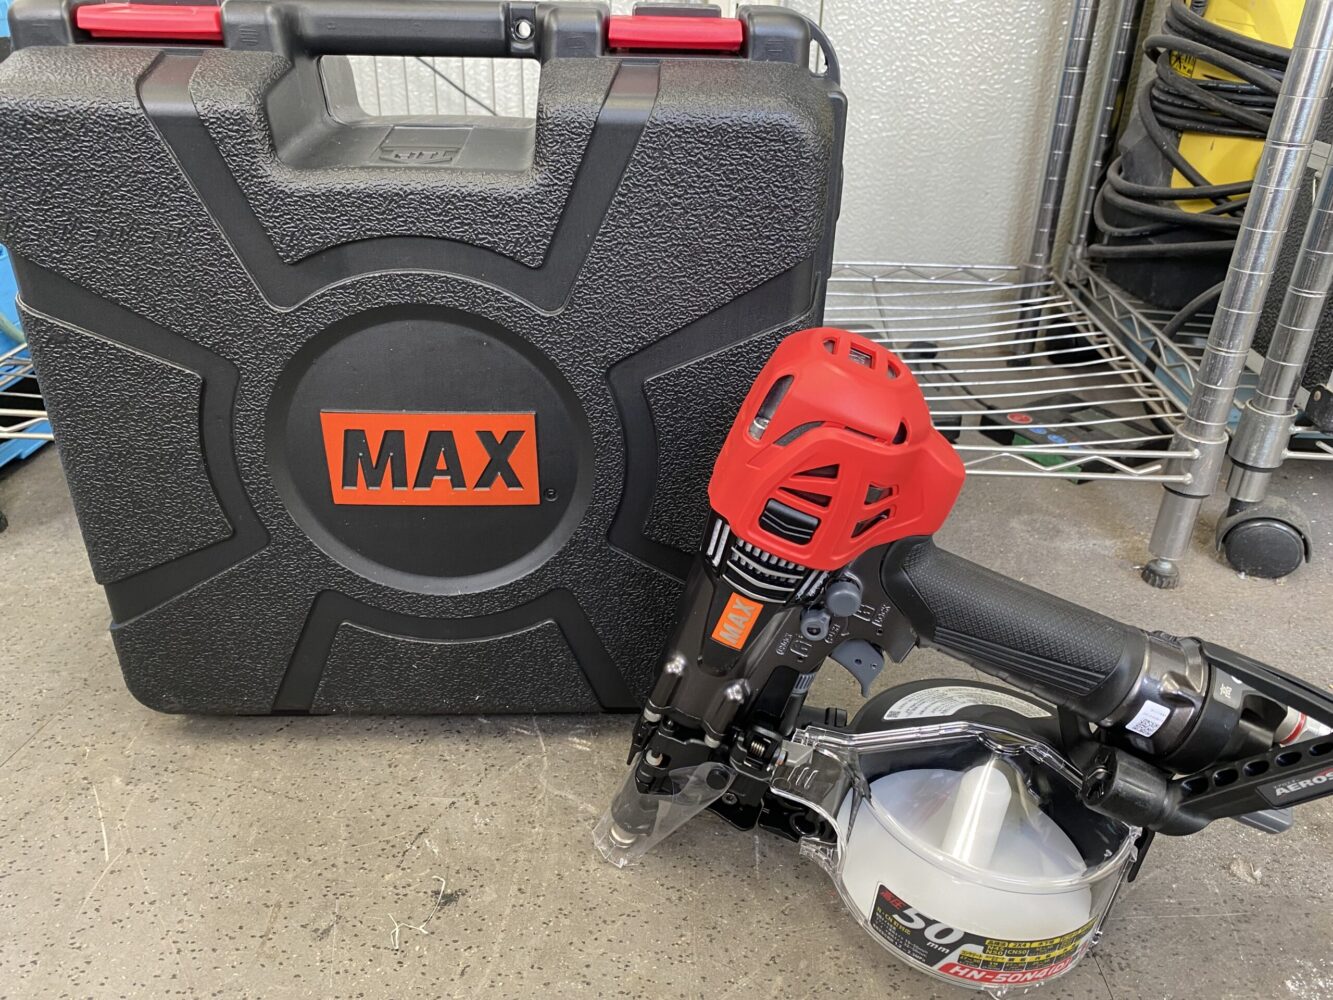 マックス(MAX)の高圧釘打機 HN-50N4(D)-Gを買い取りさせて頂き